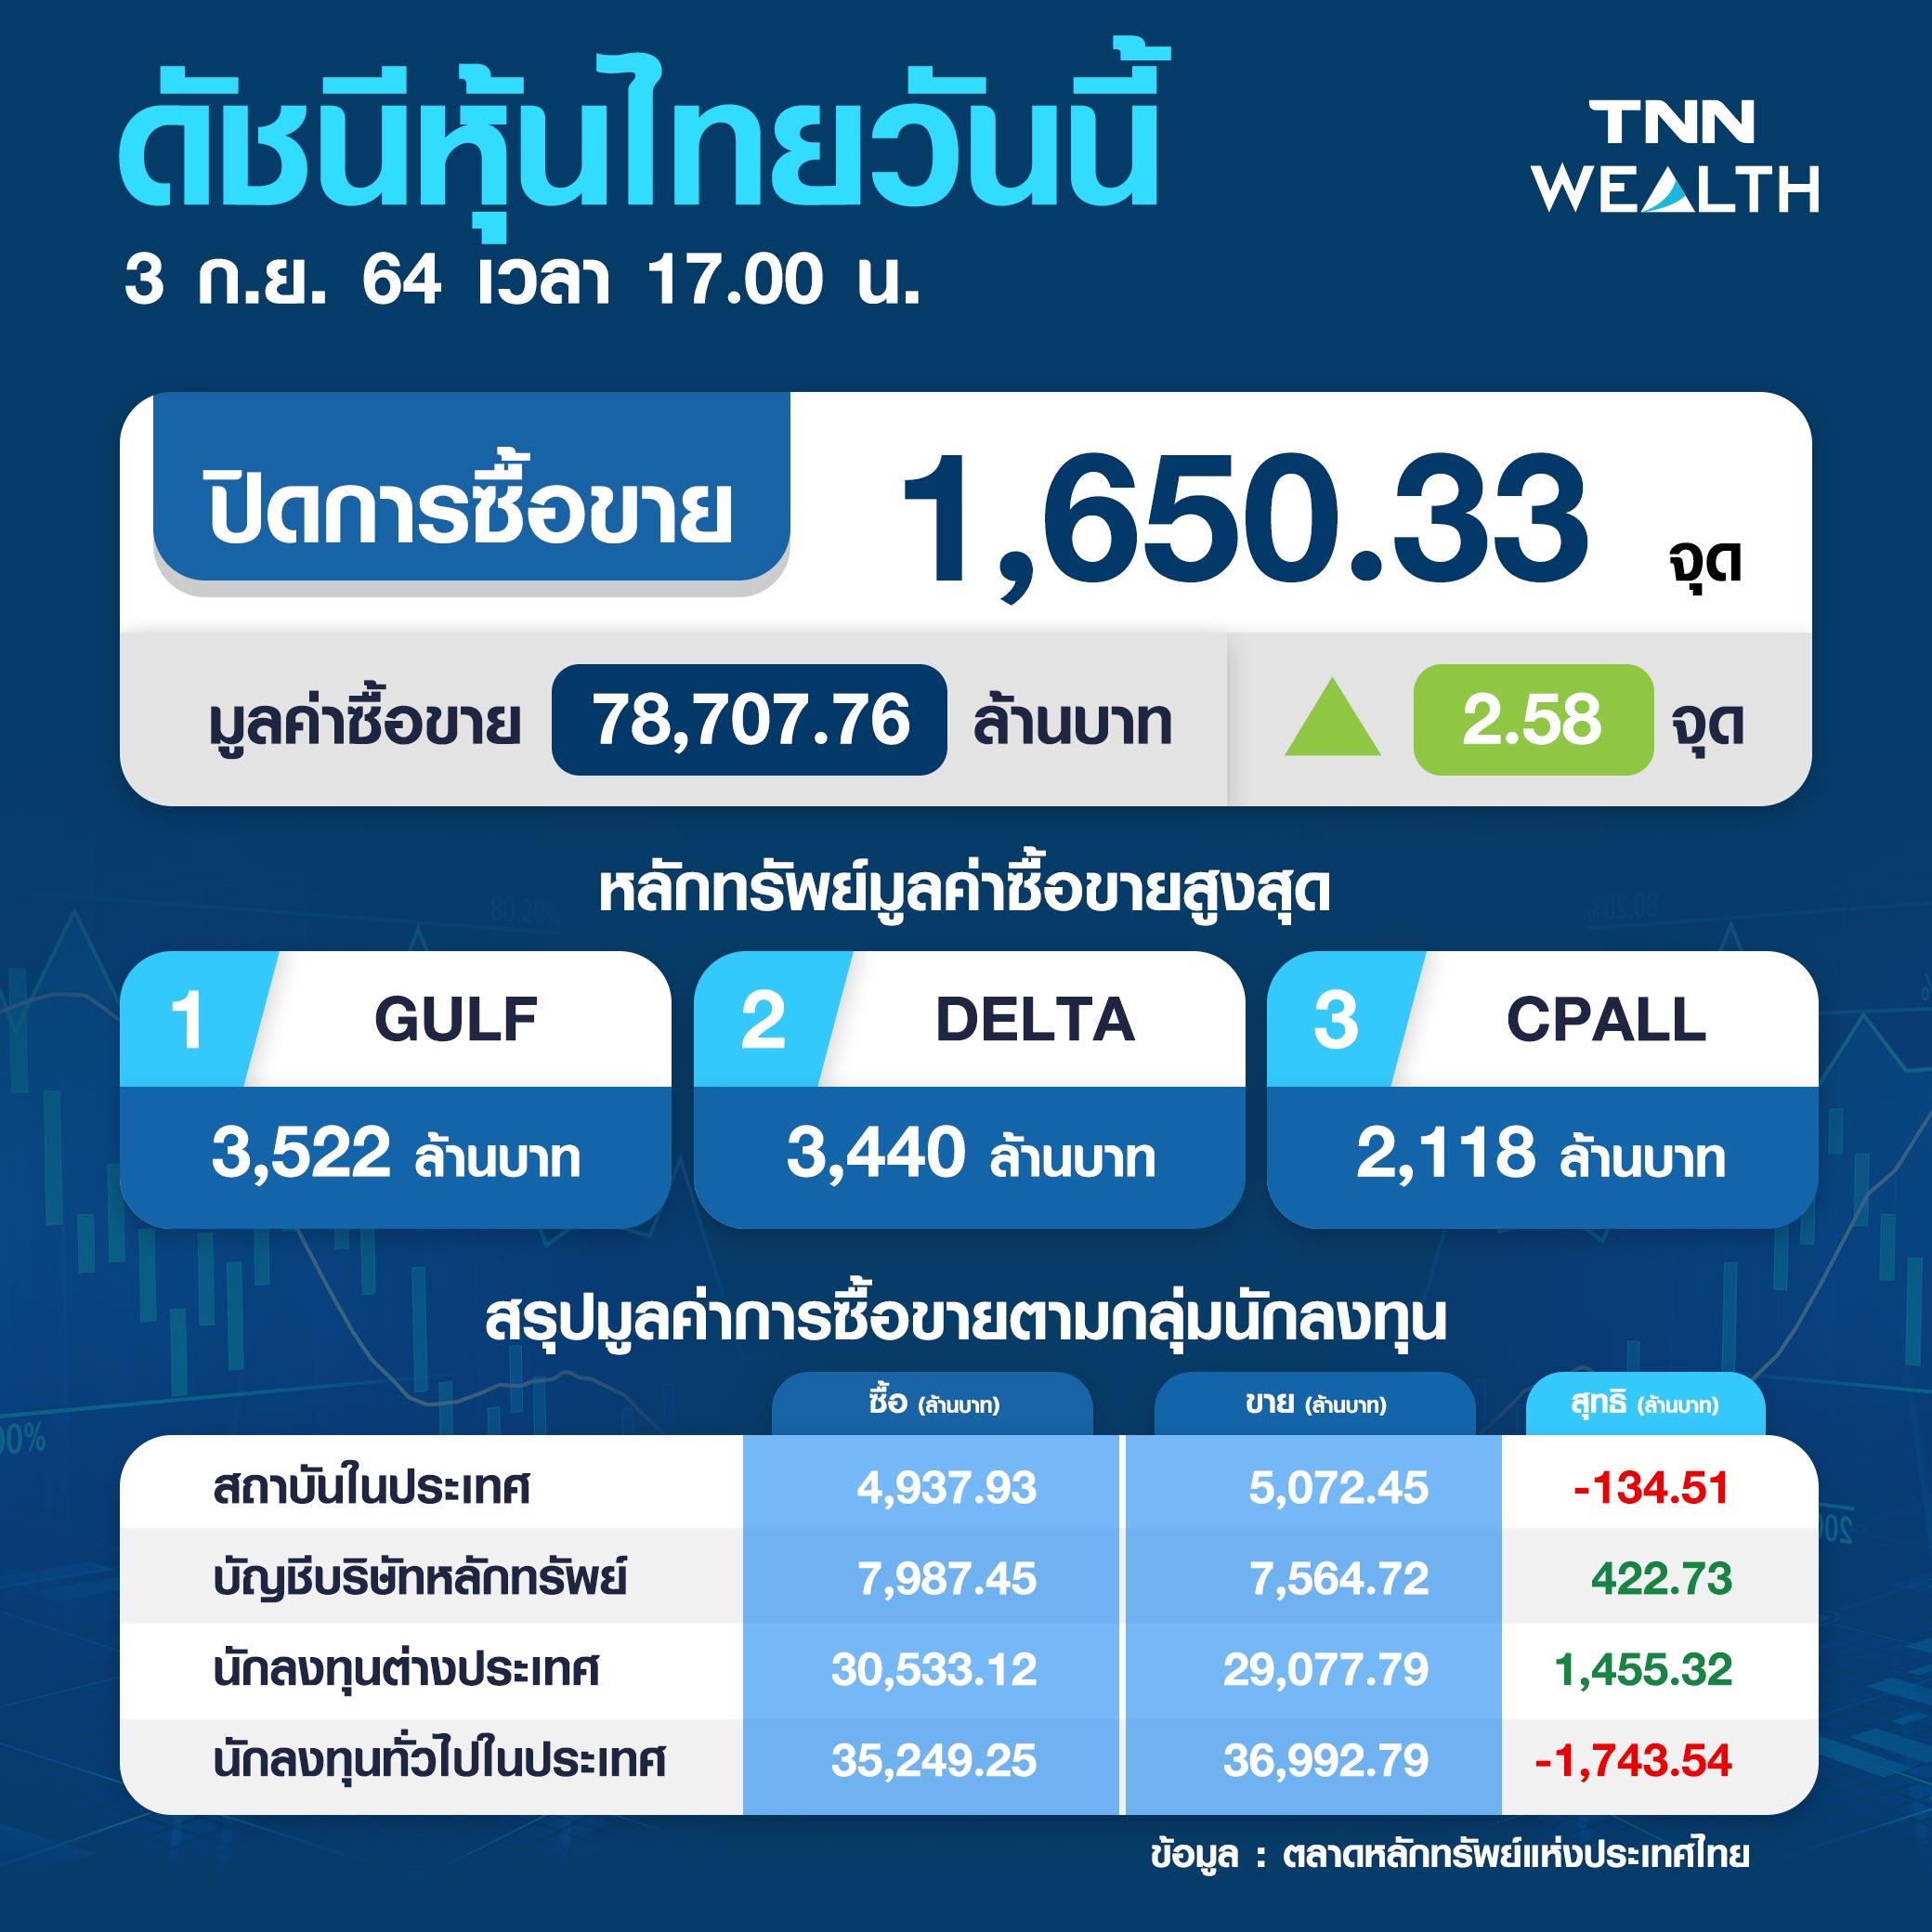 หุ้นไทยปิดบวก 2.58 จุด ขานรับภาครัฐผ่อนคลายกิจกรรมทางศก.-เปิดระบบขนส่งถึง 4 ทุ่ม